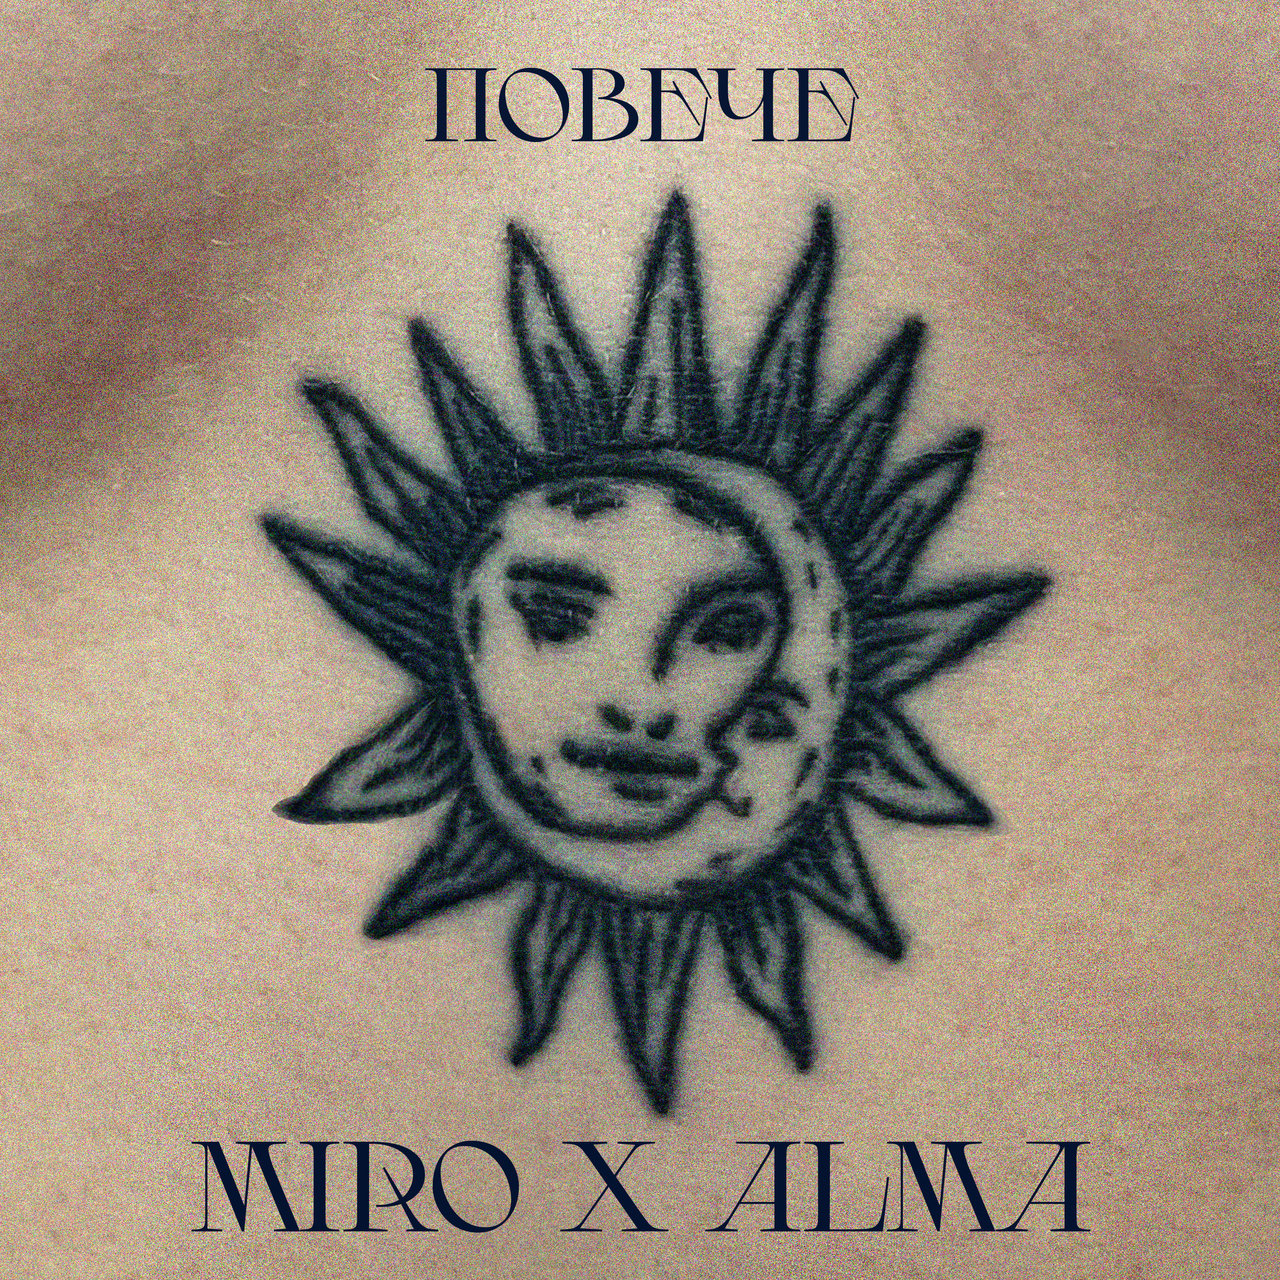 Miro & ALMA Poveche cover artwork